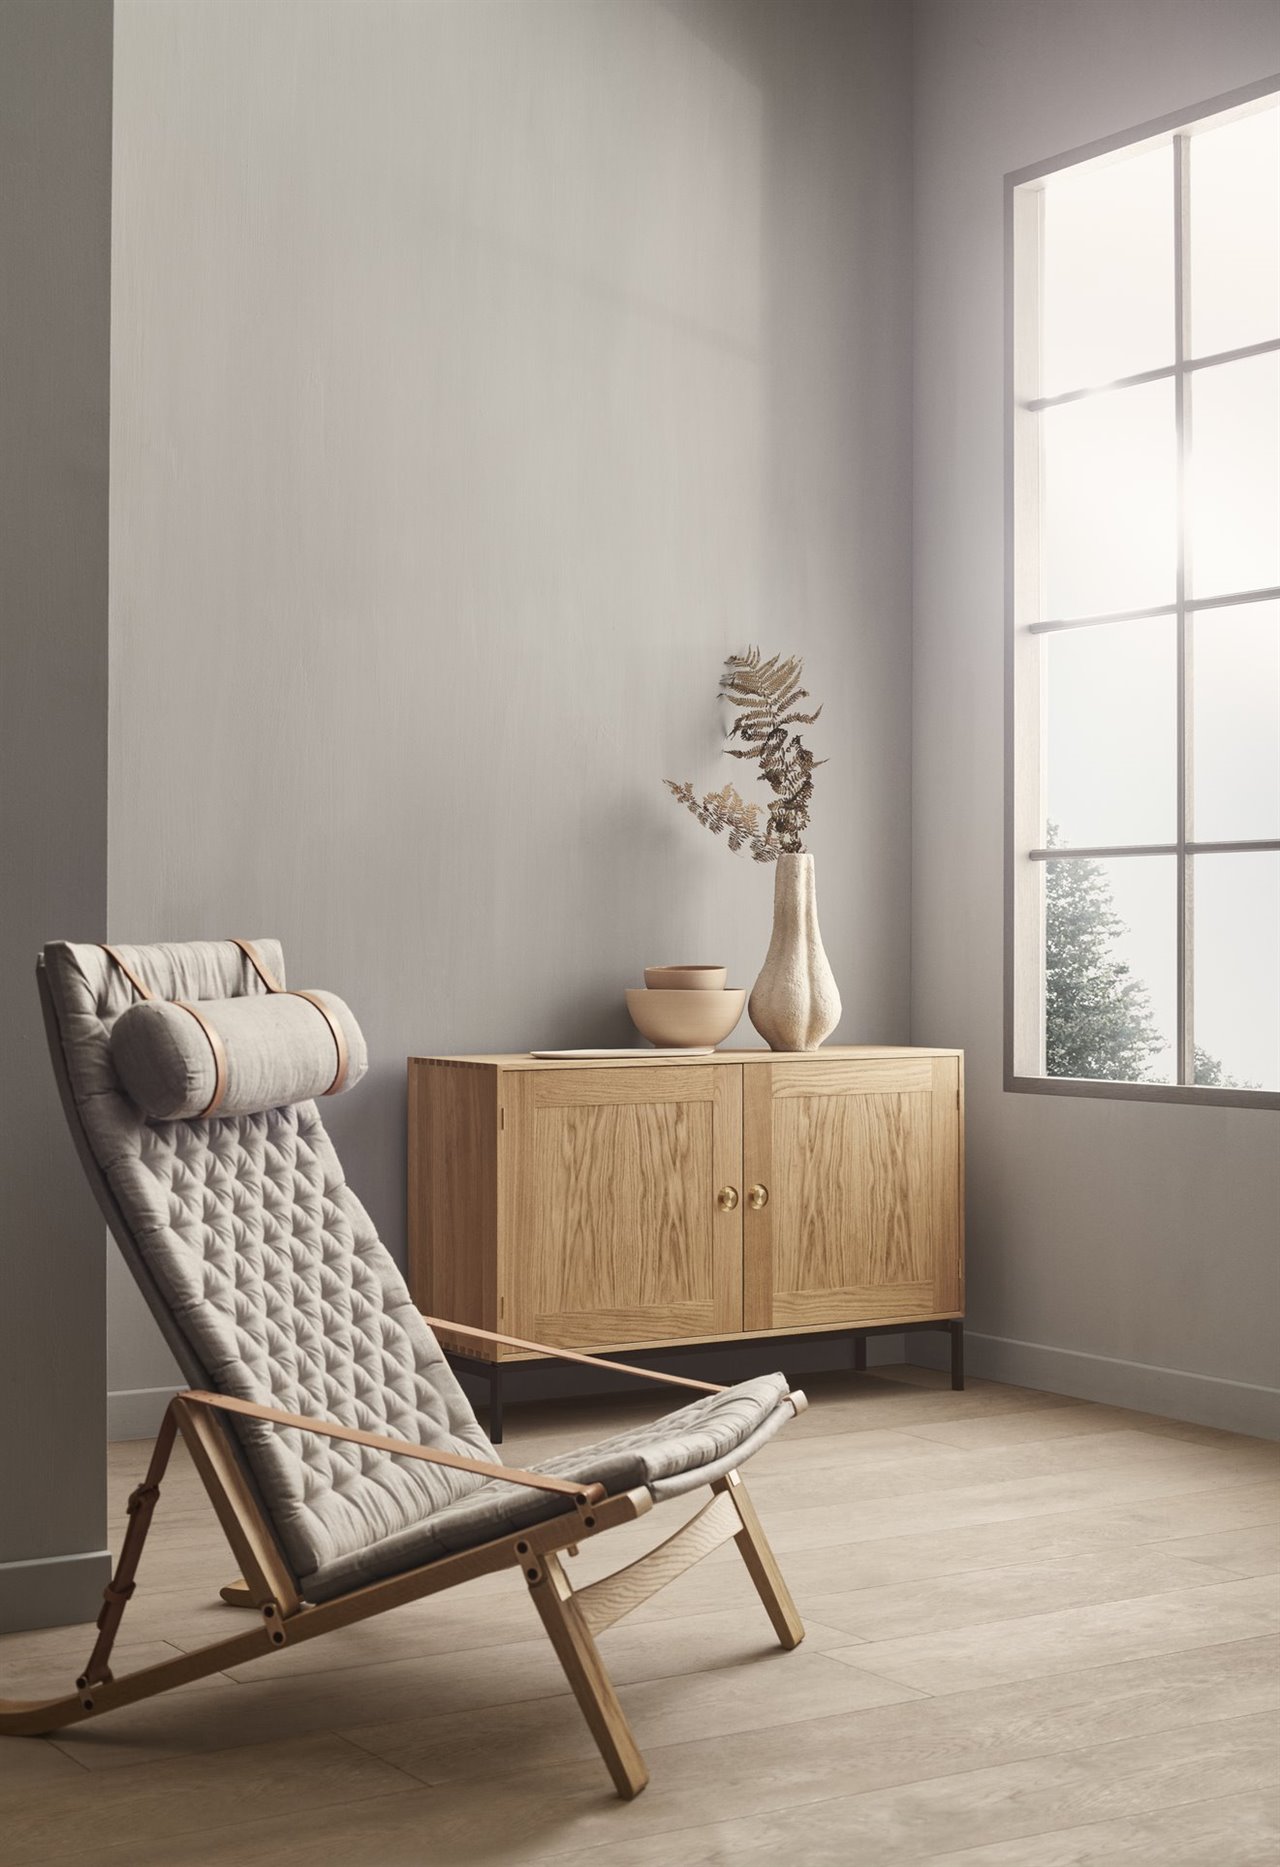 Invierte en piezas duraderas y de calidad, como la silla Plico de Carl Hansen & Søn.